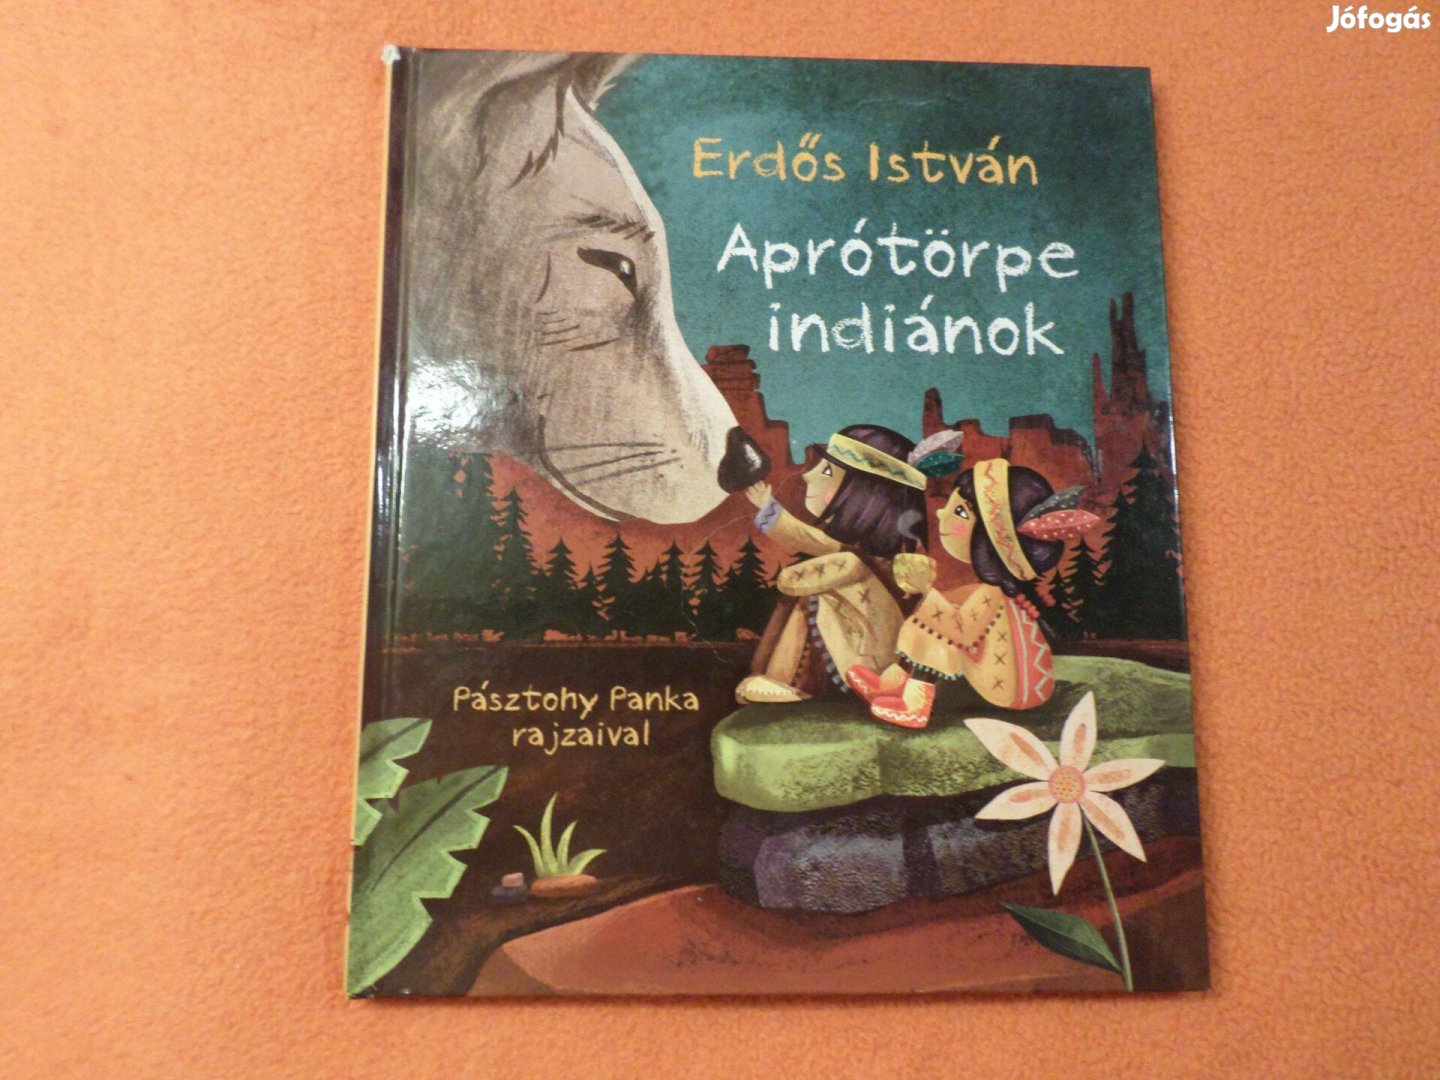 Erdős István Aprótörpe indiánok Pásztohy Panka rajz, 2013 Gyermekkönyv